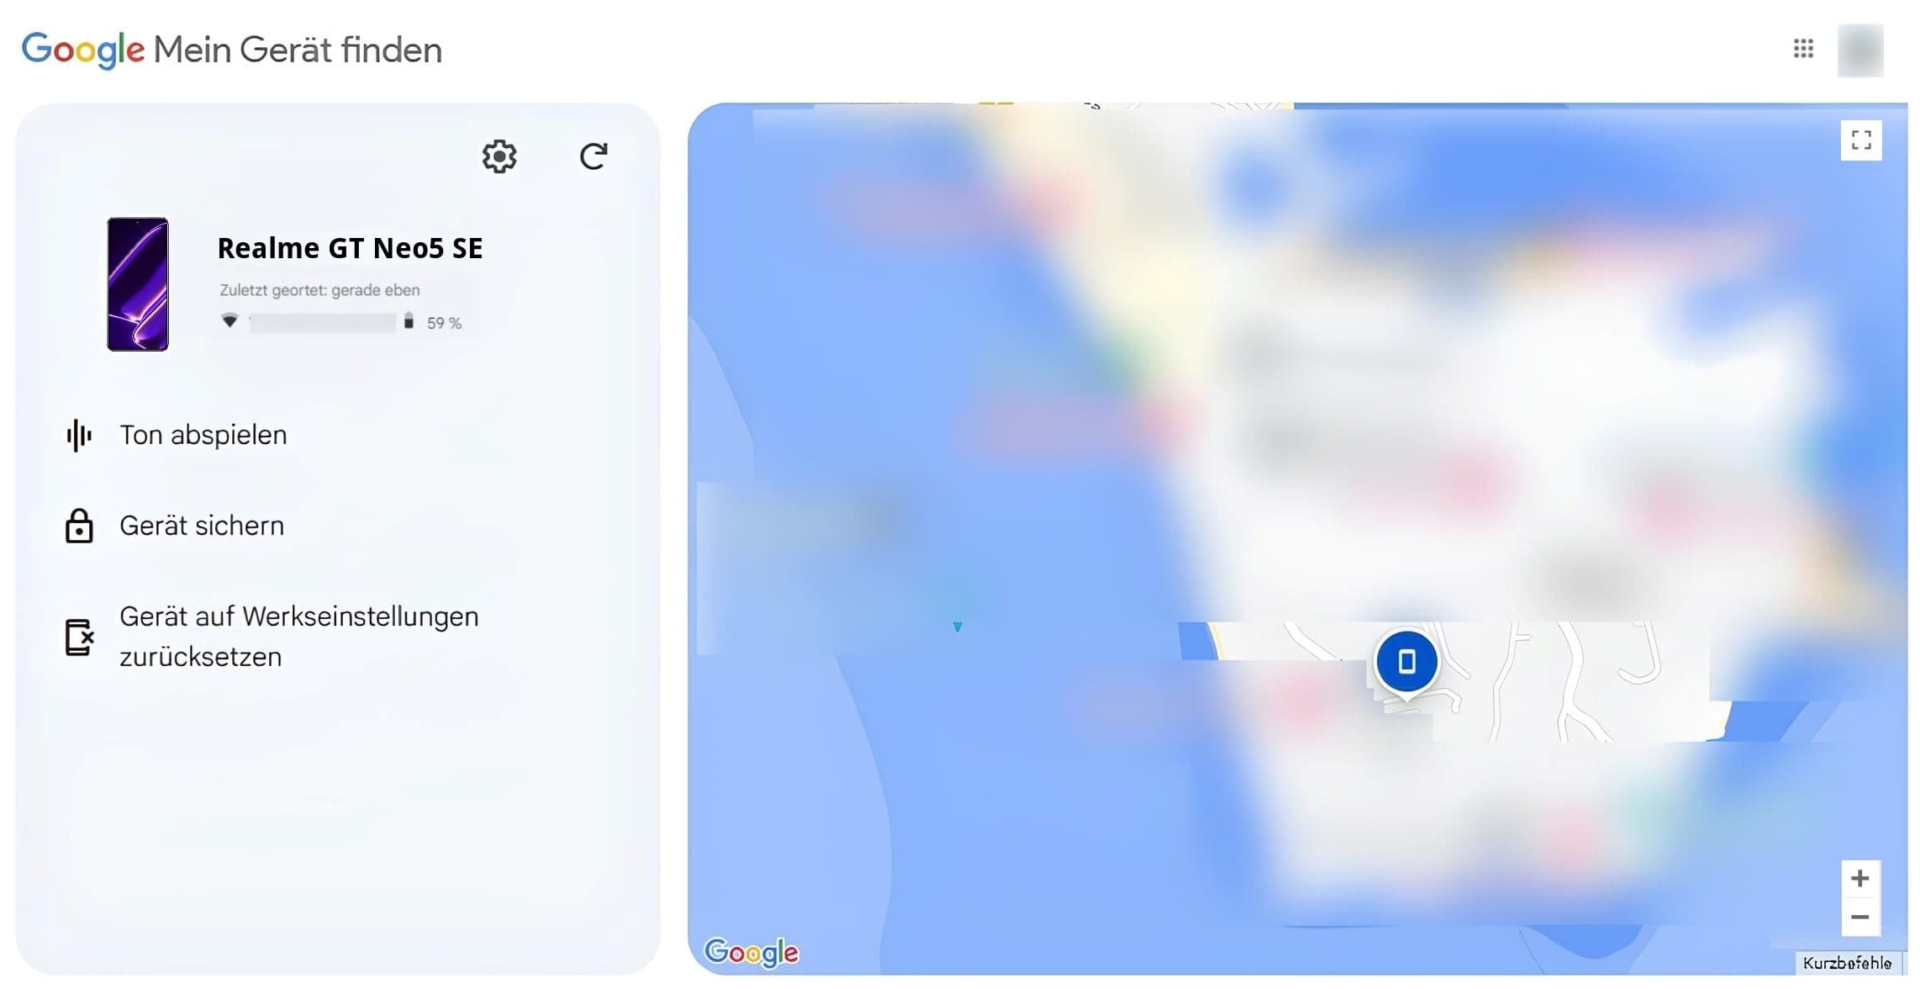 Ein Bild des Realme-Handys auf Google "Mein Gerät finden"